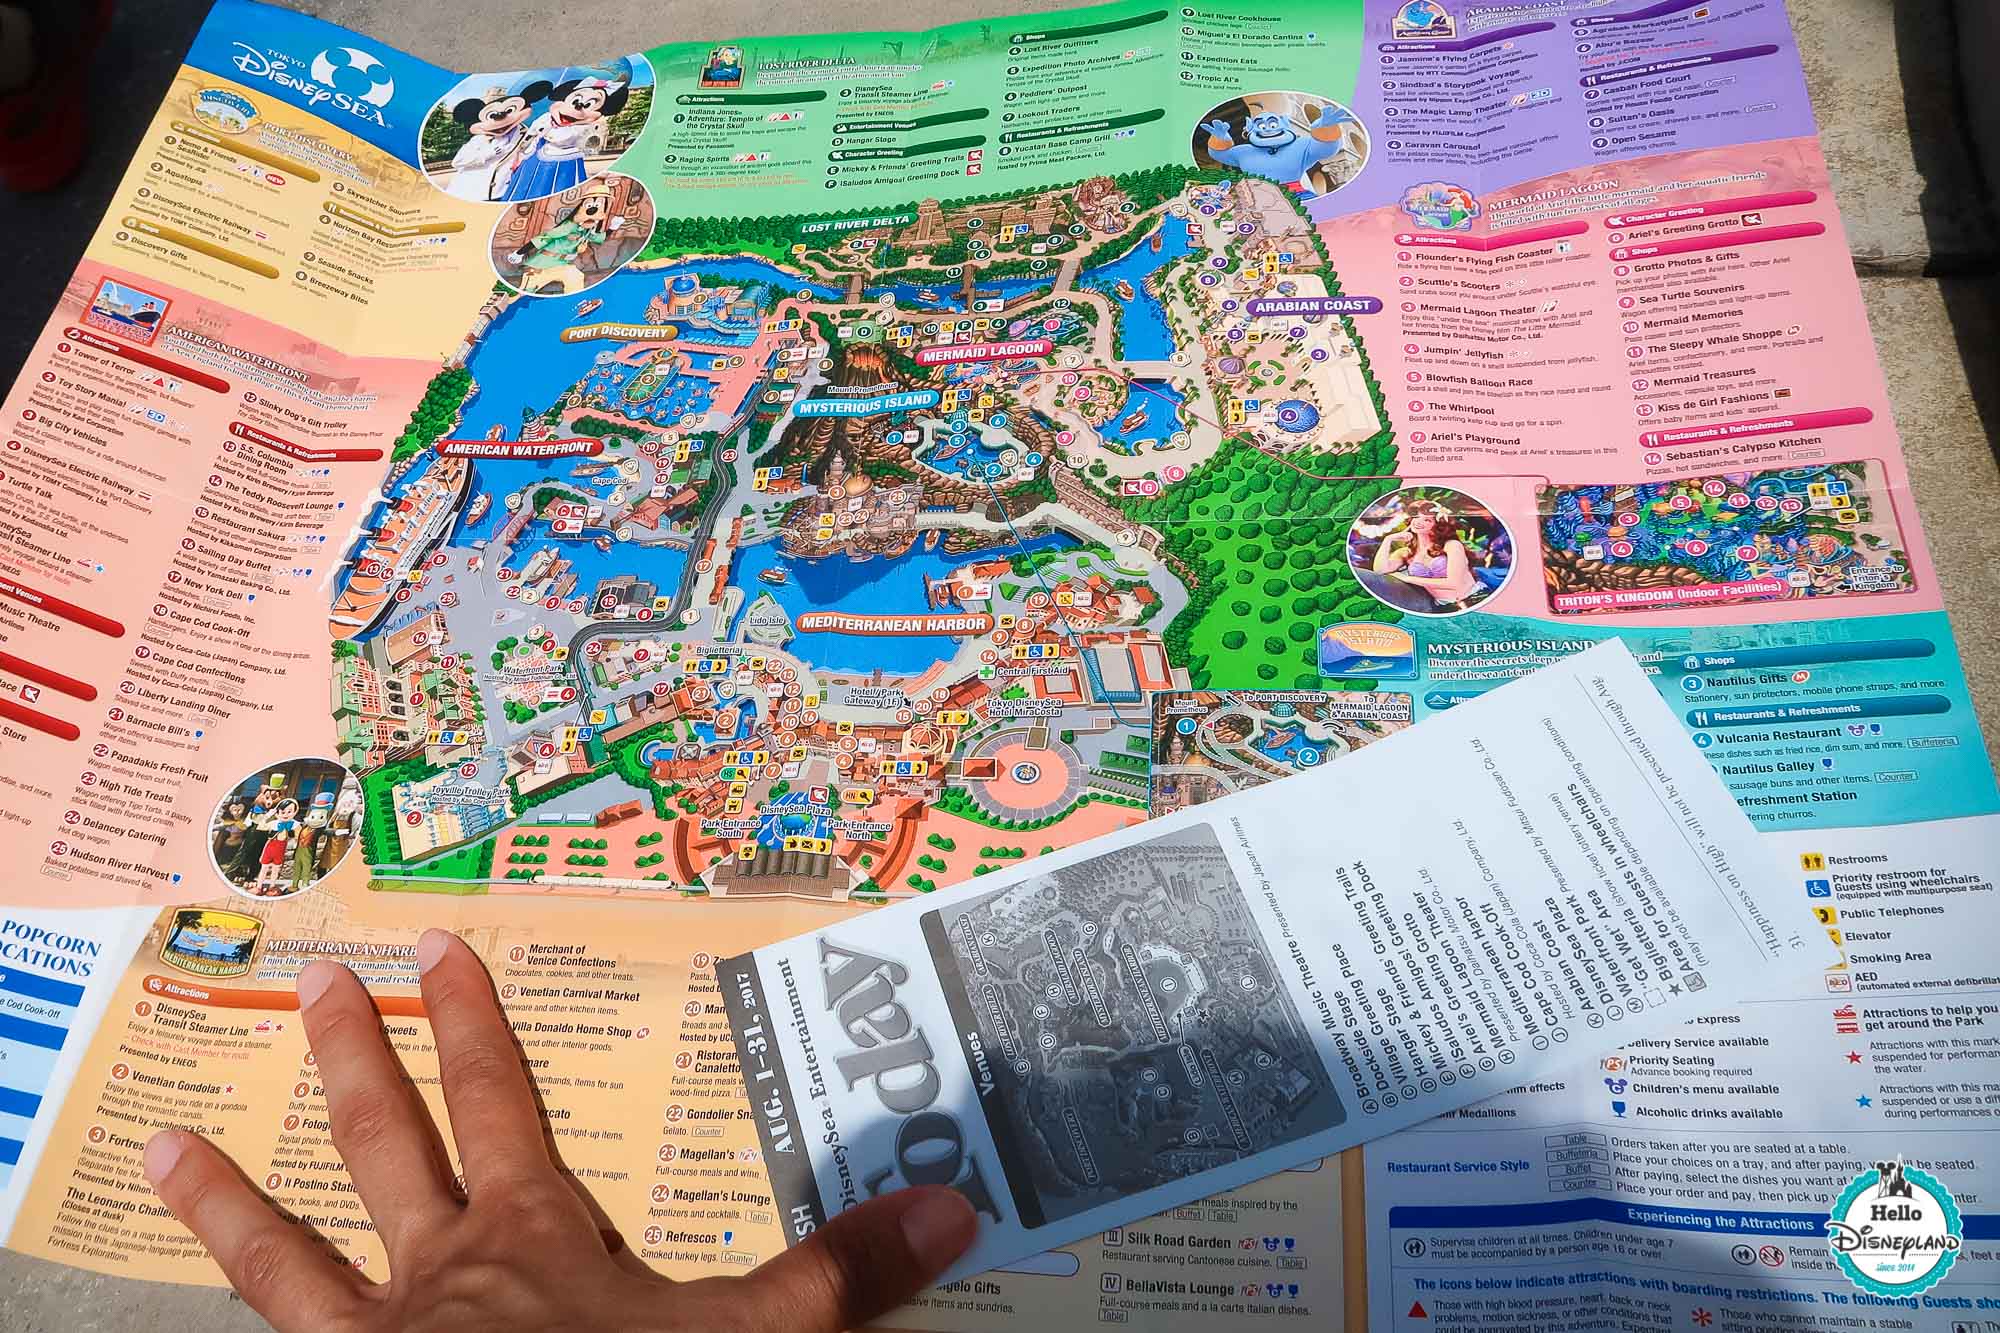 Tokyo Disney Sea est toujours le plus beau parc Disney du monde